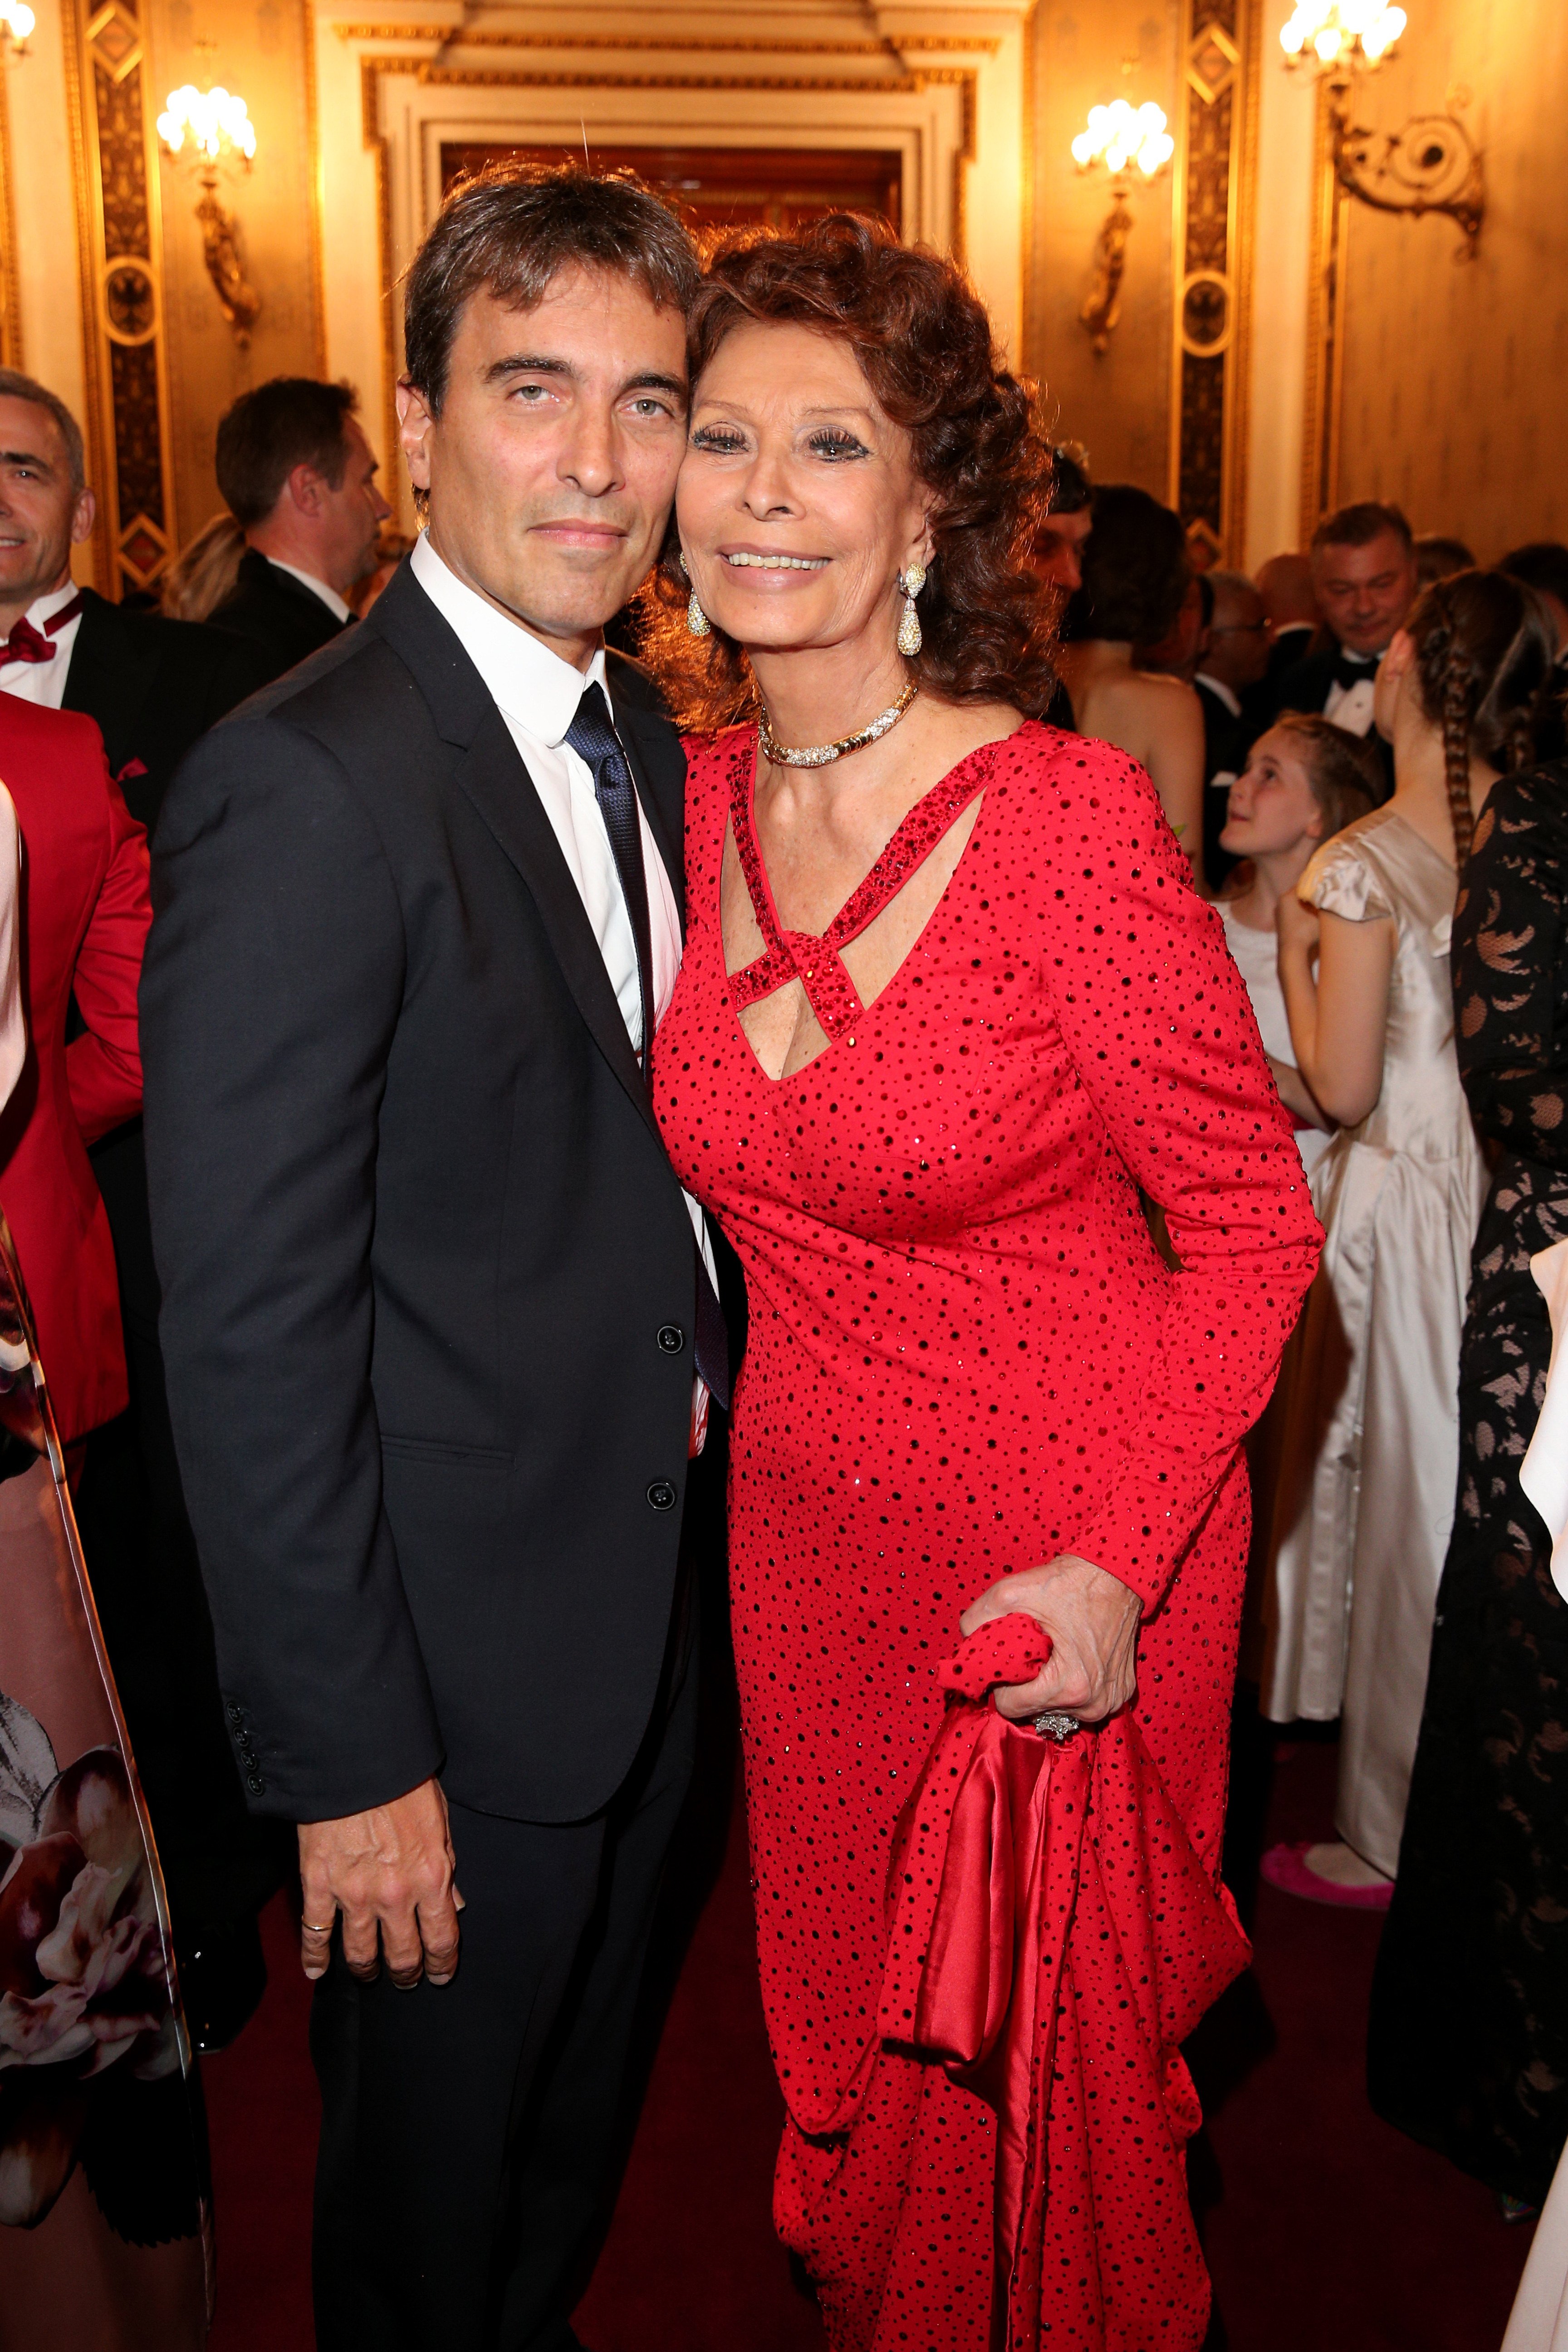 Sophia Loren und ihr Sohn Carlo Ponti Jr. bei der Verleihung des Europäischen Kulturpreises "Taurus" an der Wiener Staatsoper am 20. Oktober 2019 in Wien, Österreich. | Quelle: Getty Images